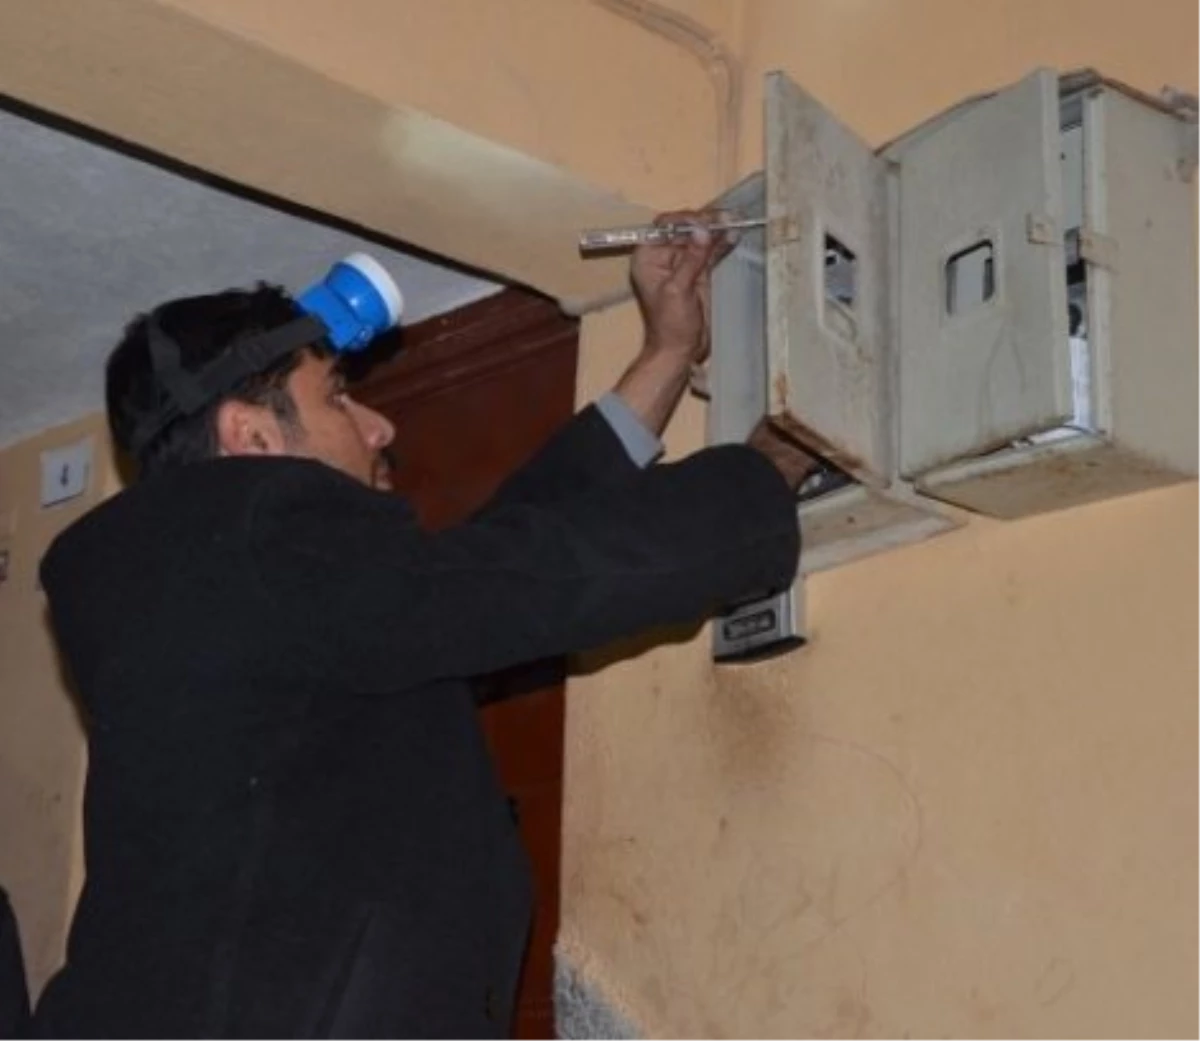 Dedaş, Borçlu 20 Belediyenin Elektriğini Kesti